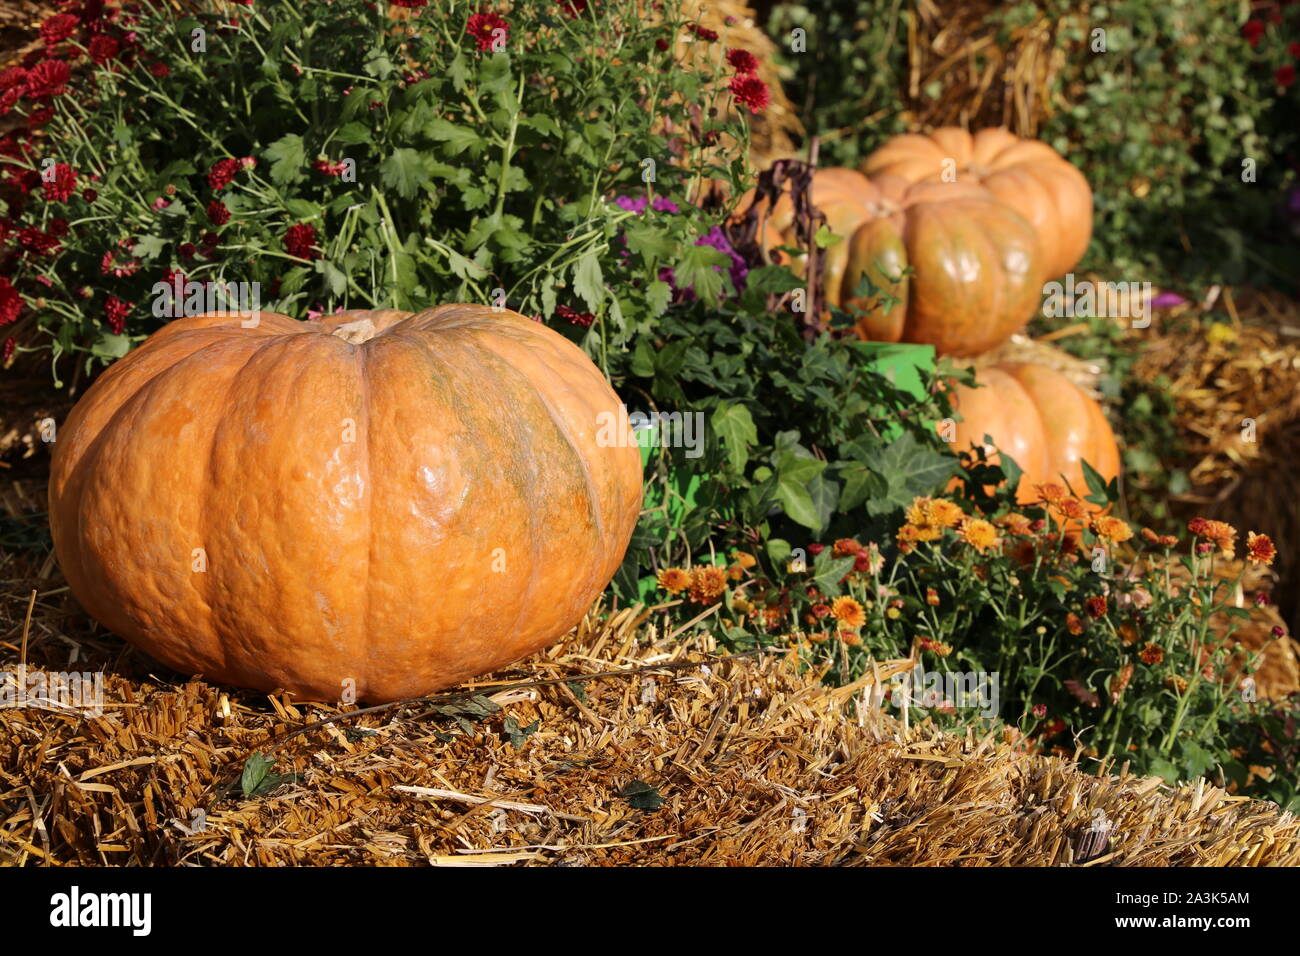 La decoración en el día de acción de gracias, el otoño de la cosecha. Las calabazas de color naranja en la paja y el heno con flores. Foto de stock